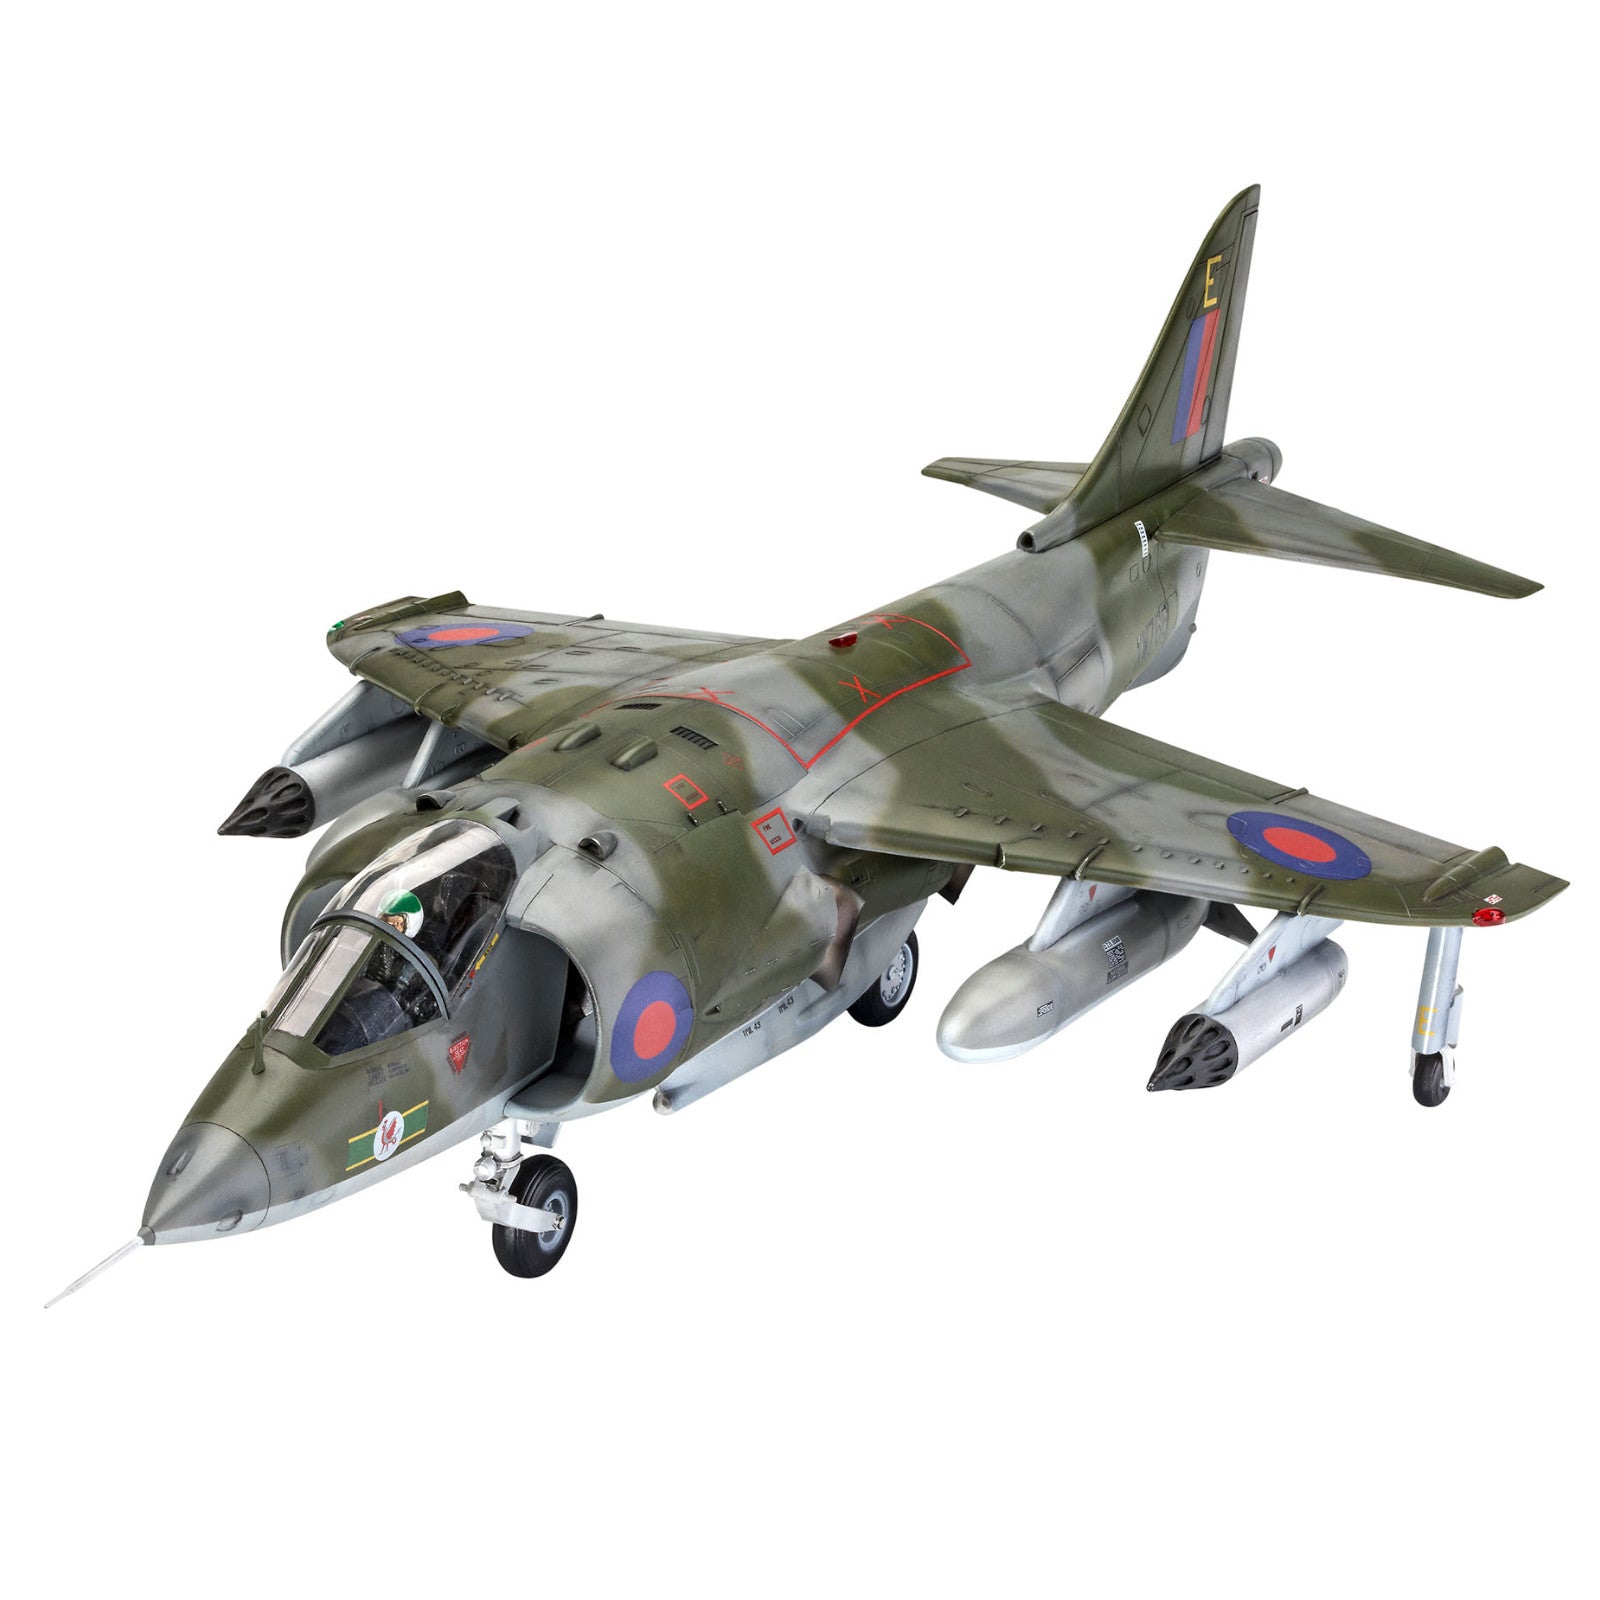 Hawker Harrier GR Mk.1 Fighter Jet Military Model Kit Gift Camo Green 1:32